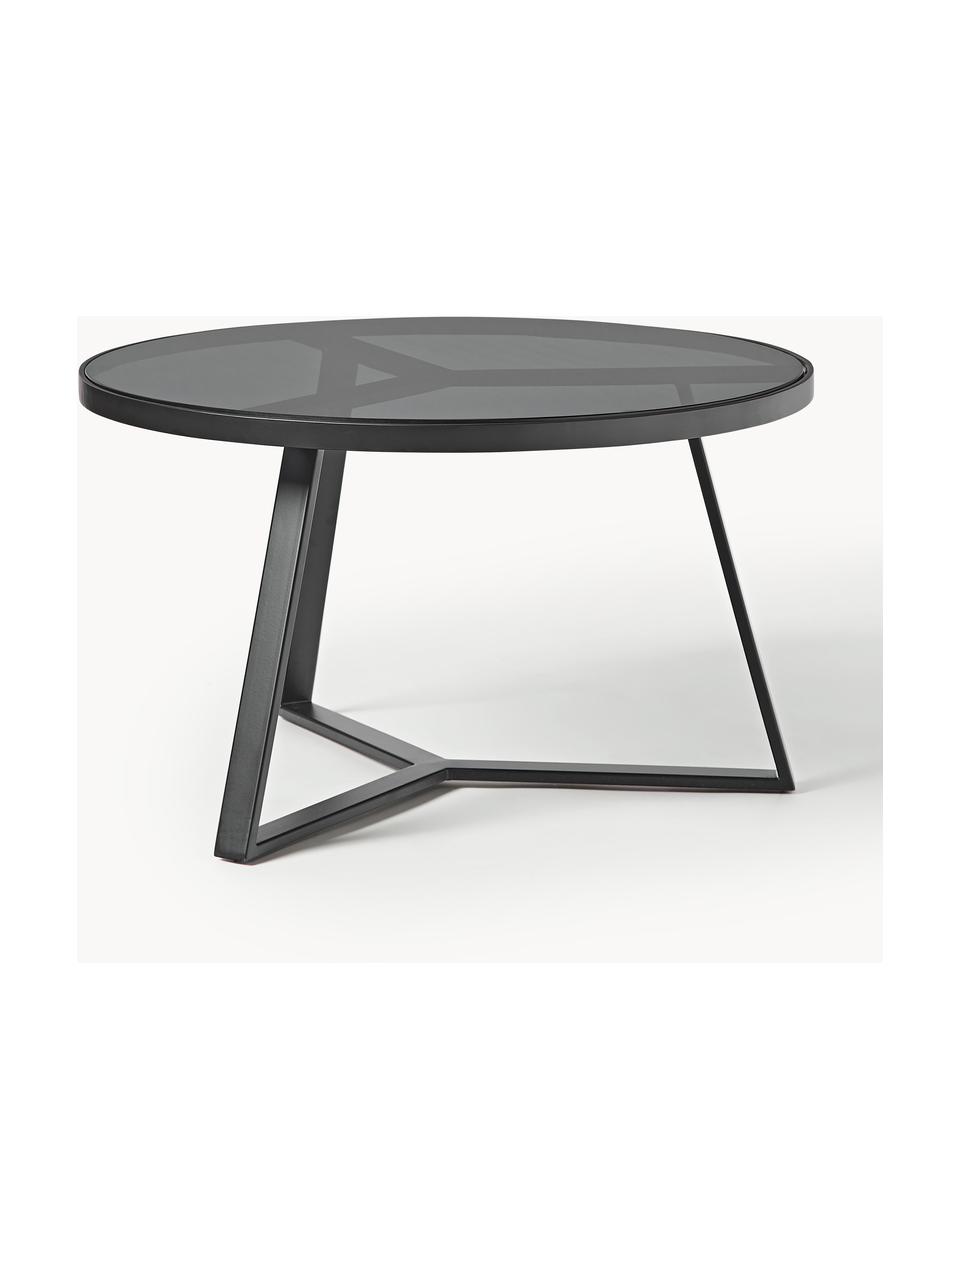 Tavolino rotondo da salotto Fortunata, Struttura: metallo spazzolato, Trasparente nero tinto, nero, Ø 70 cm